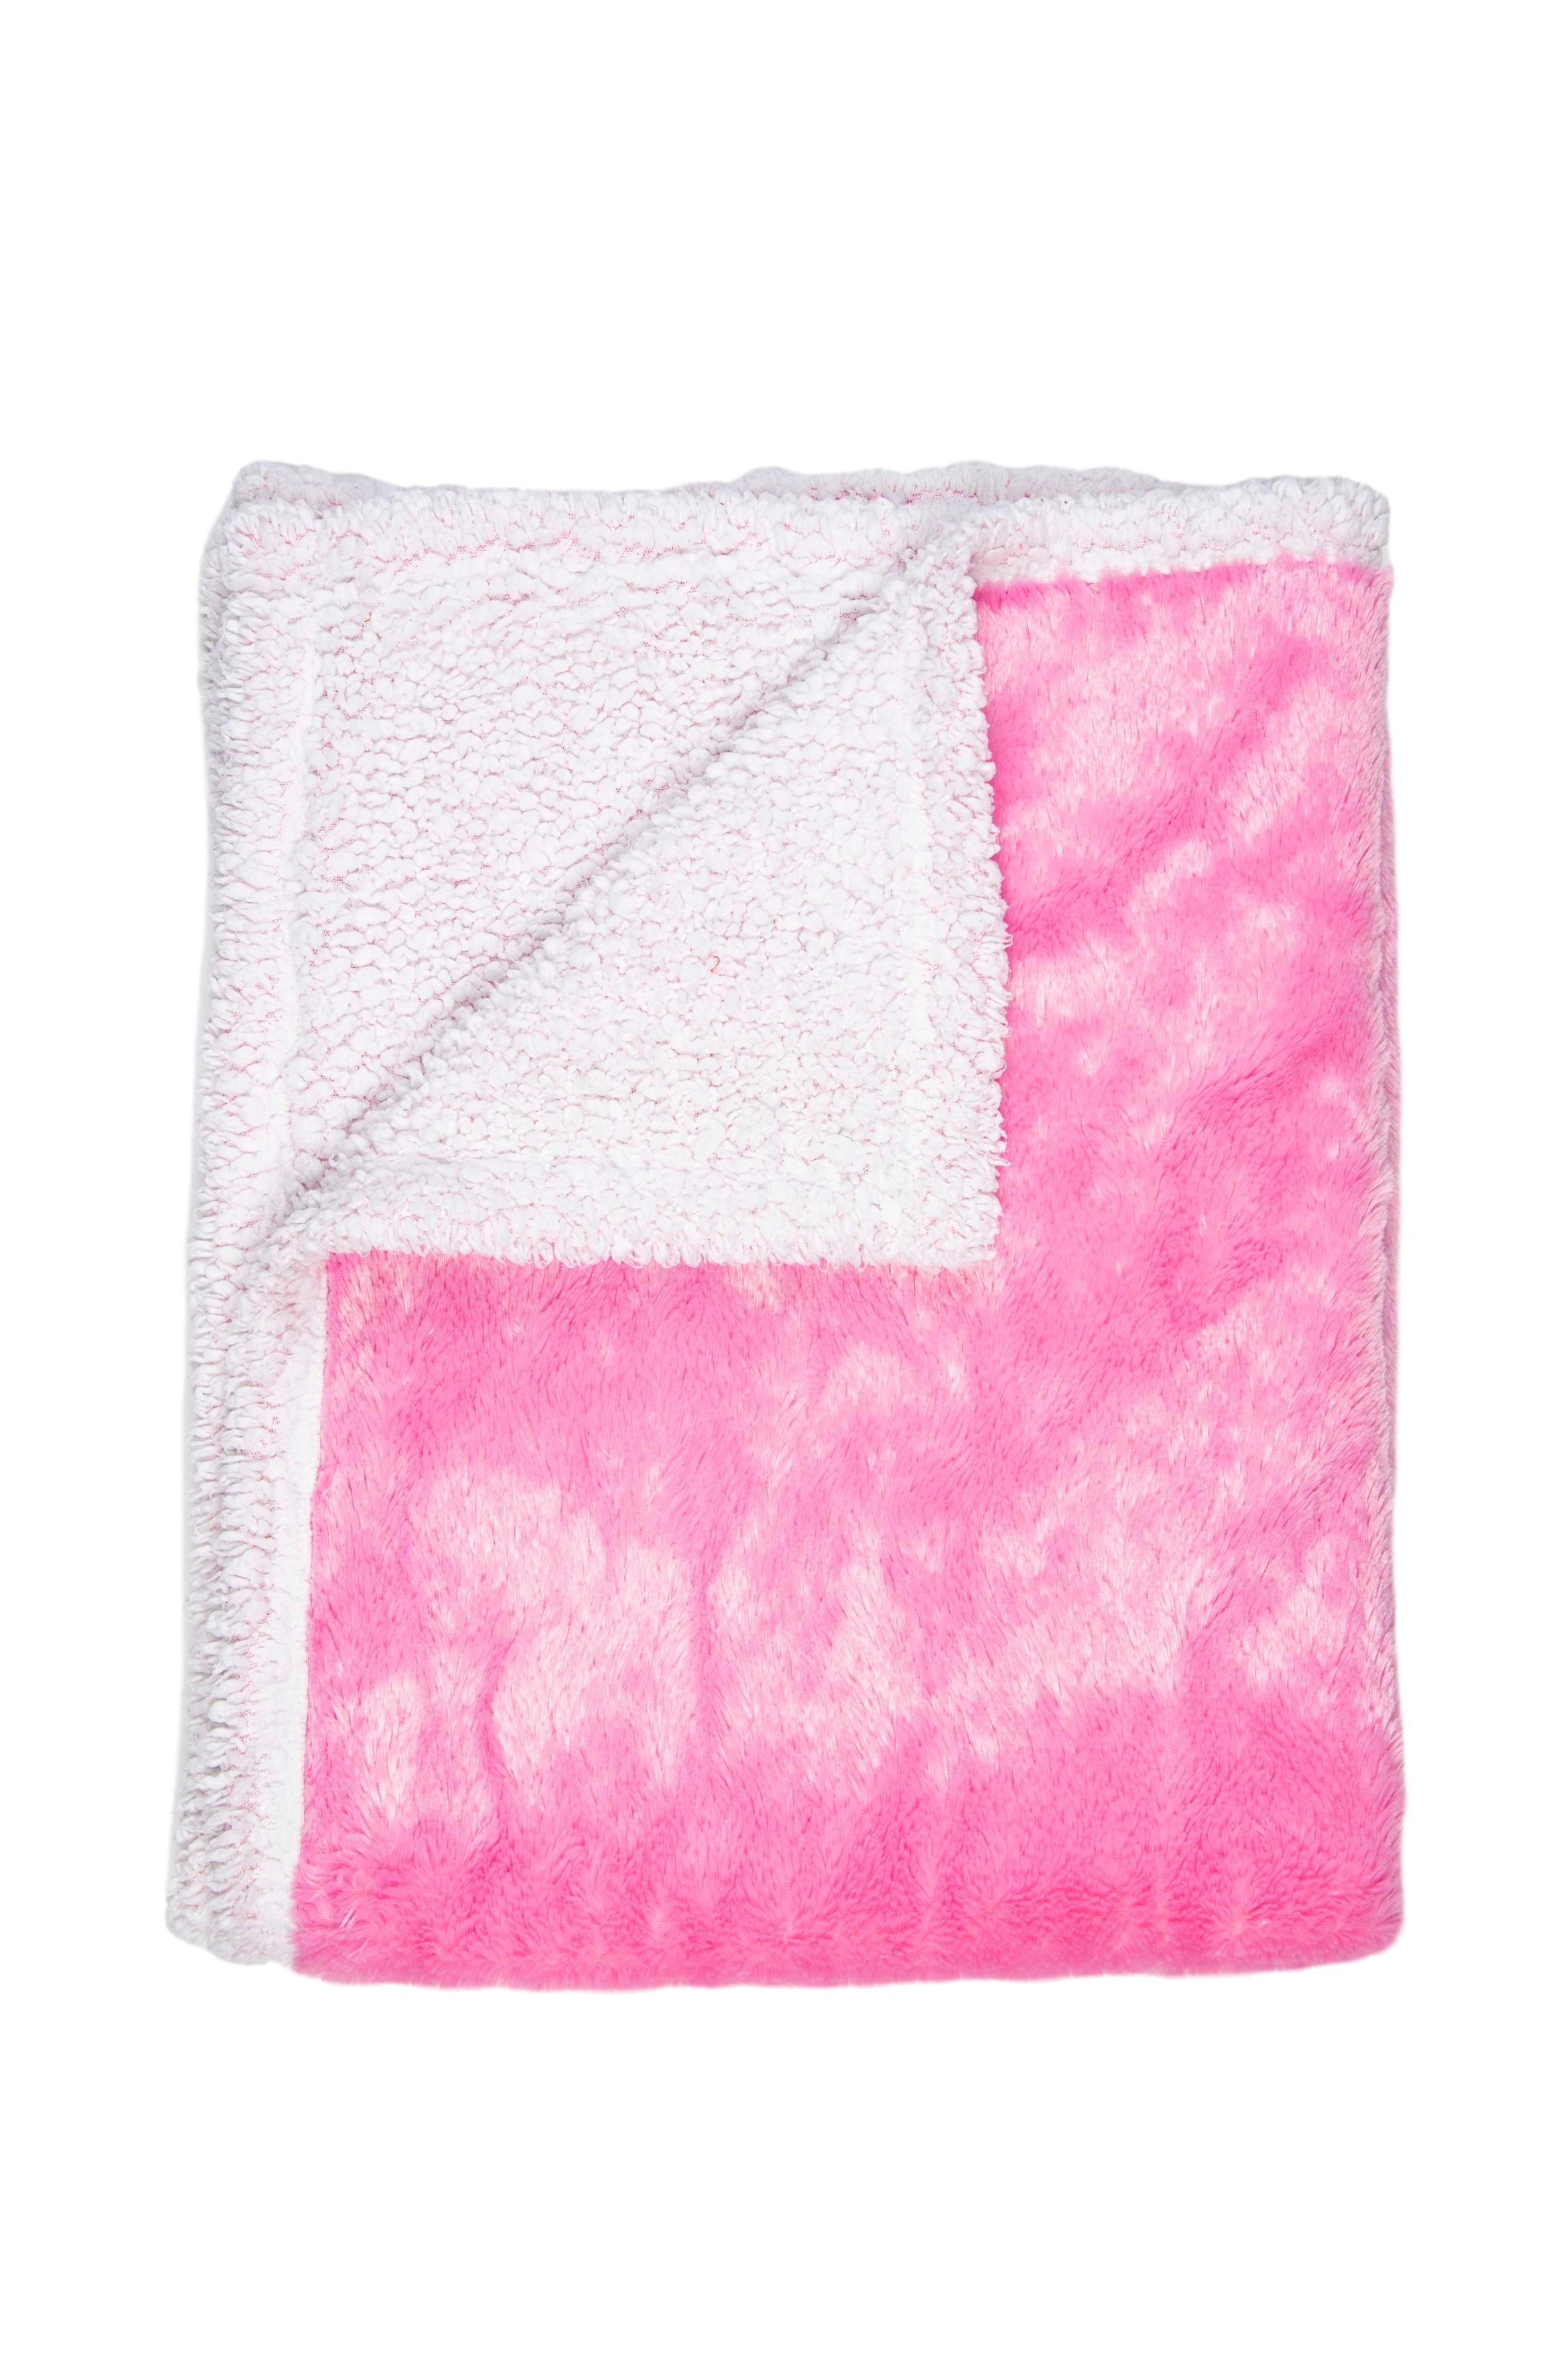 Manta acolchada de peluche rosada y blanca. 75cmx100cm - Casa Joven